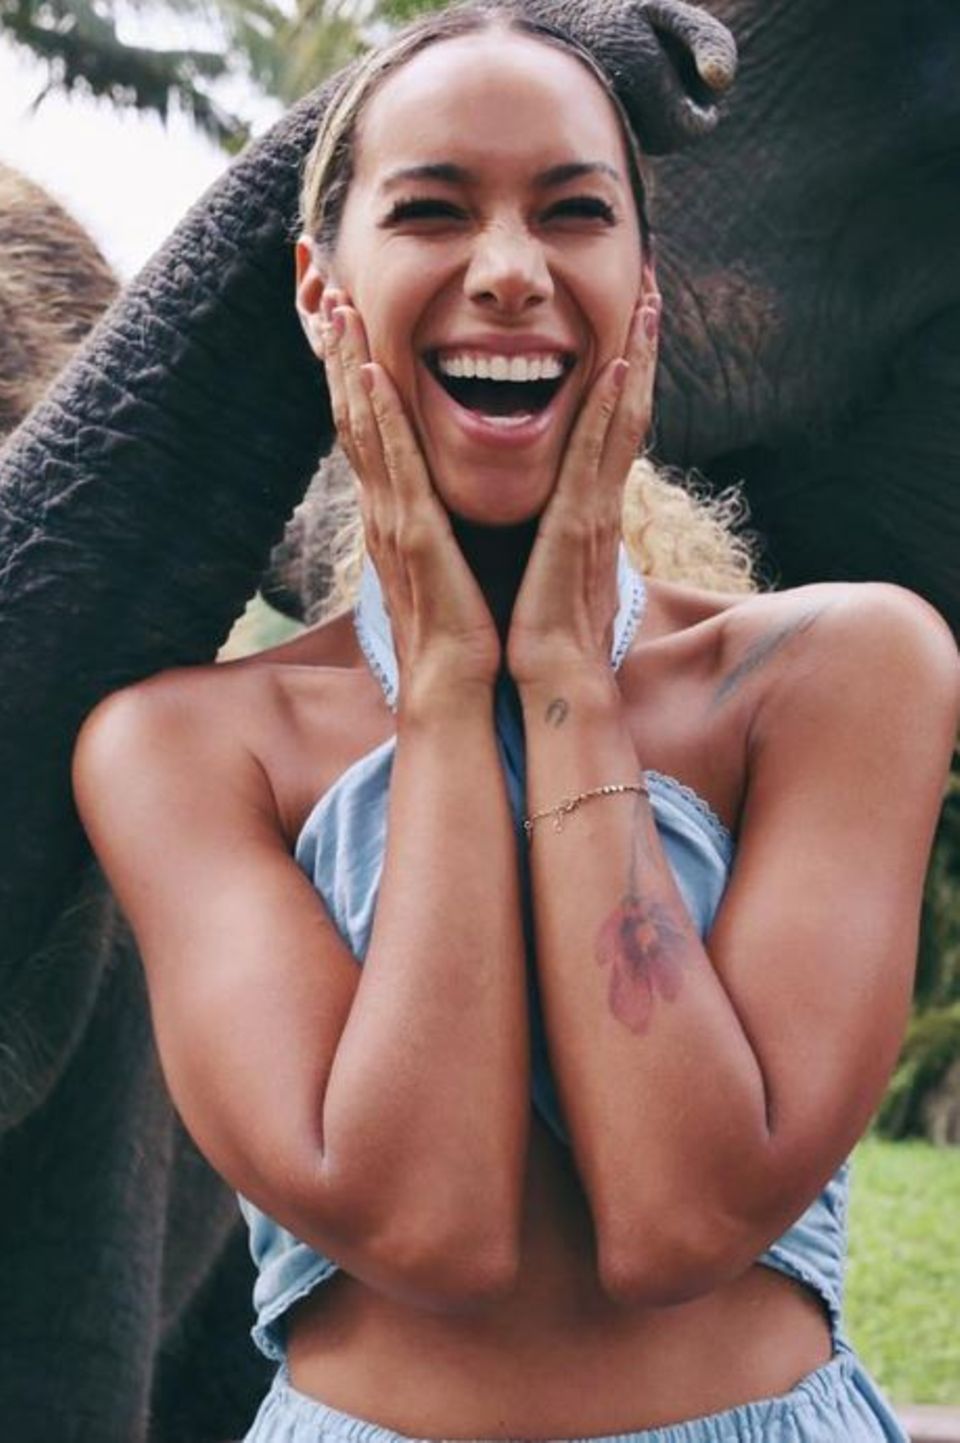 Dieser niedliche Elefant bringt Leona Lewis zum Strahlen. Auf Instagram schreibt die Sängerin: "This made my soul happy".